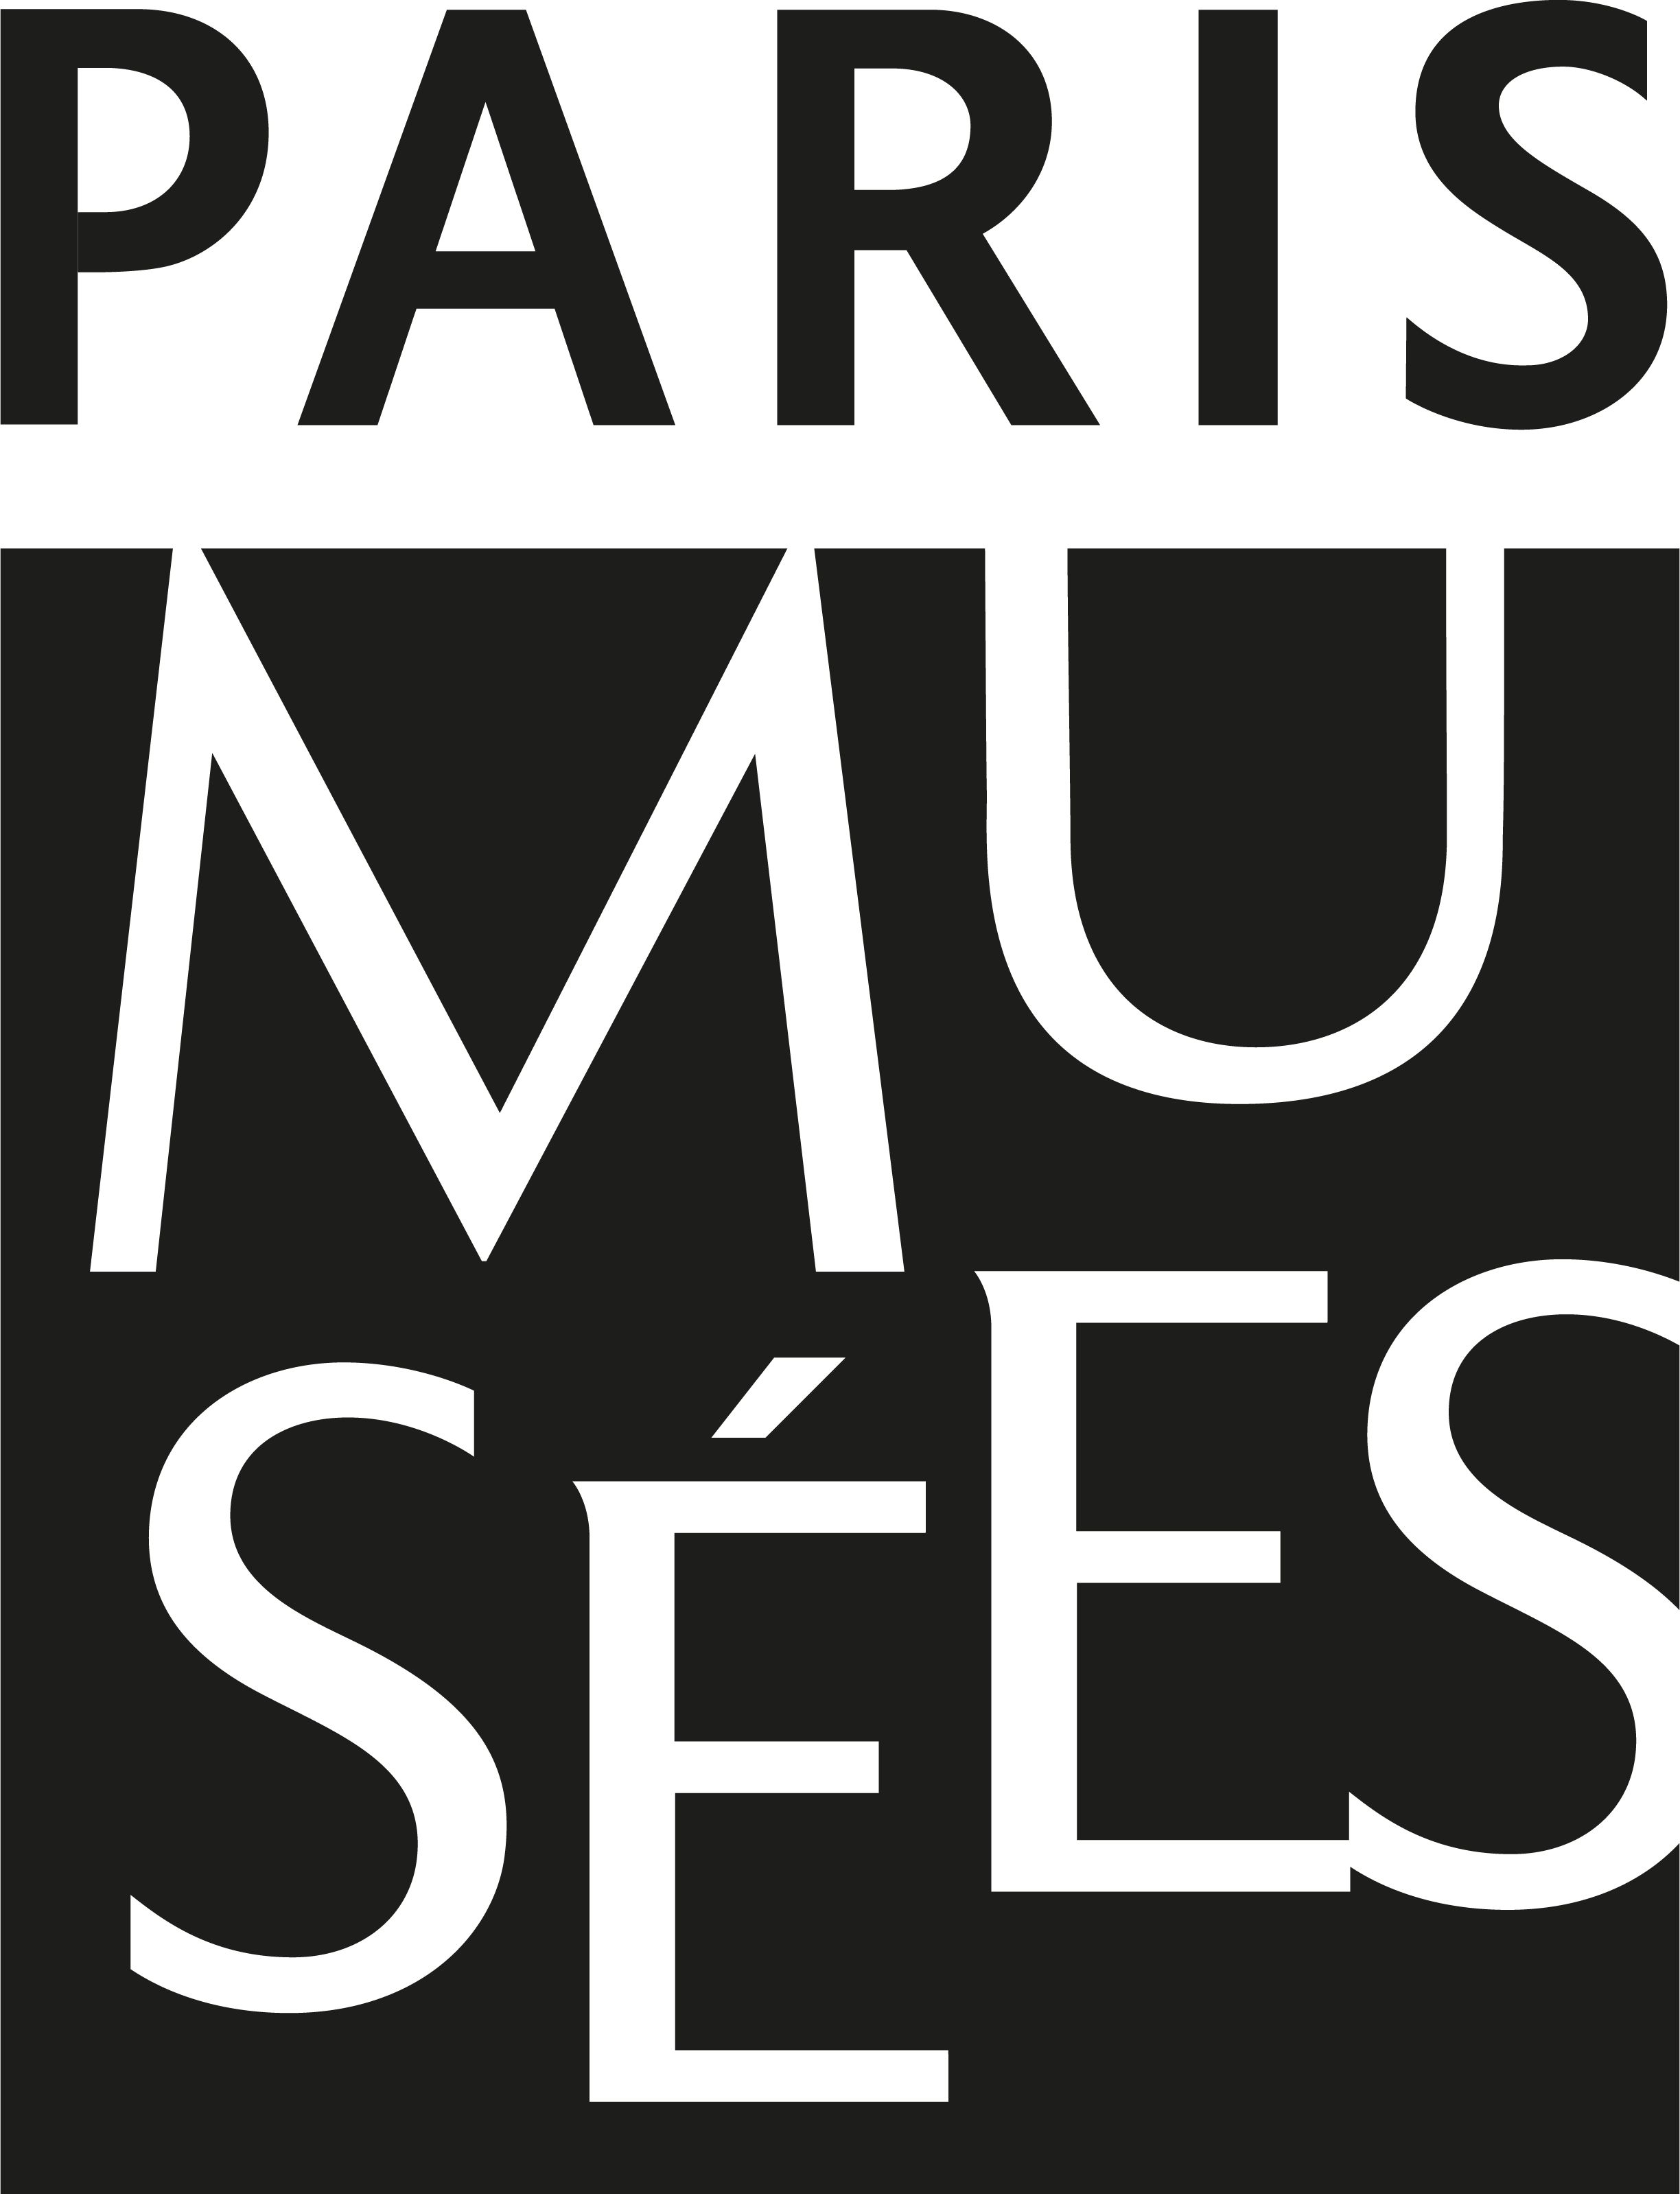 Paris Musées